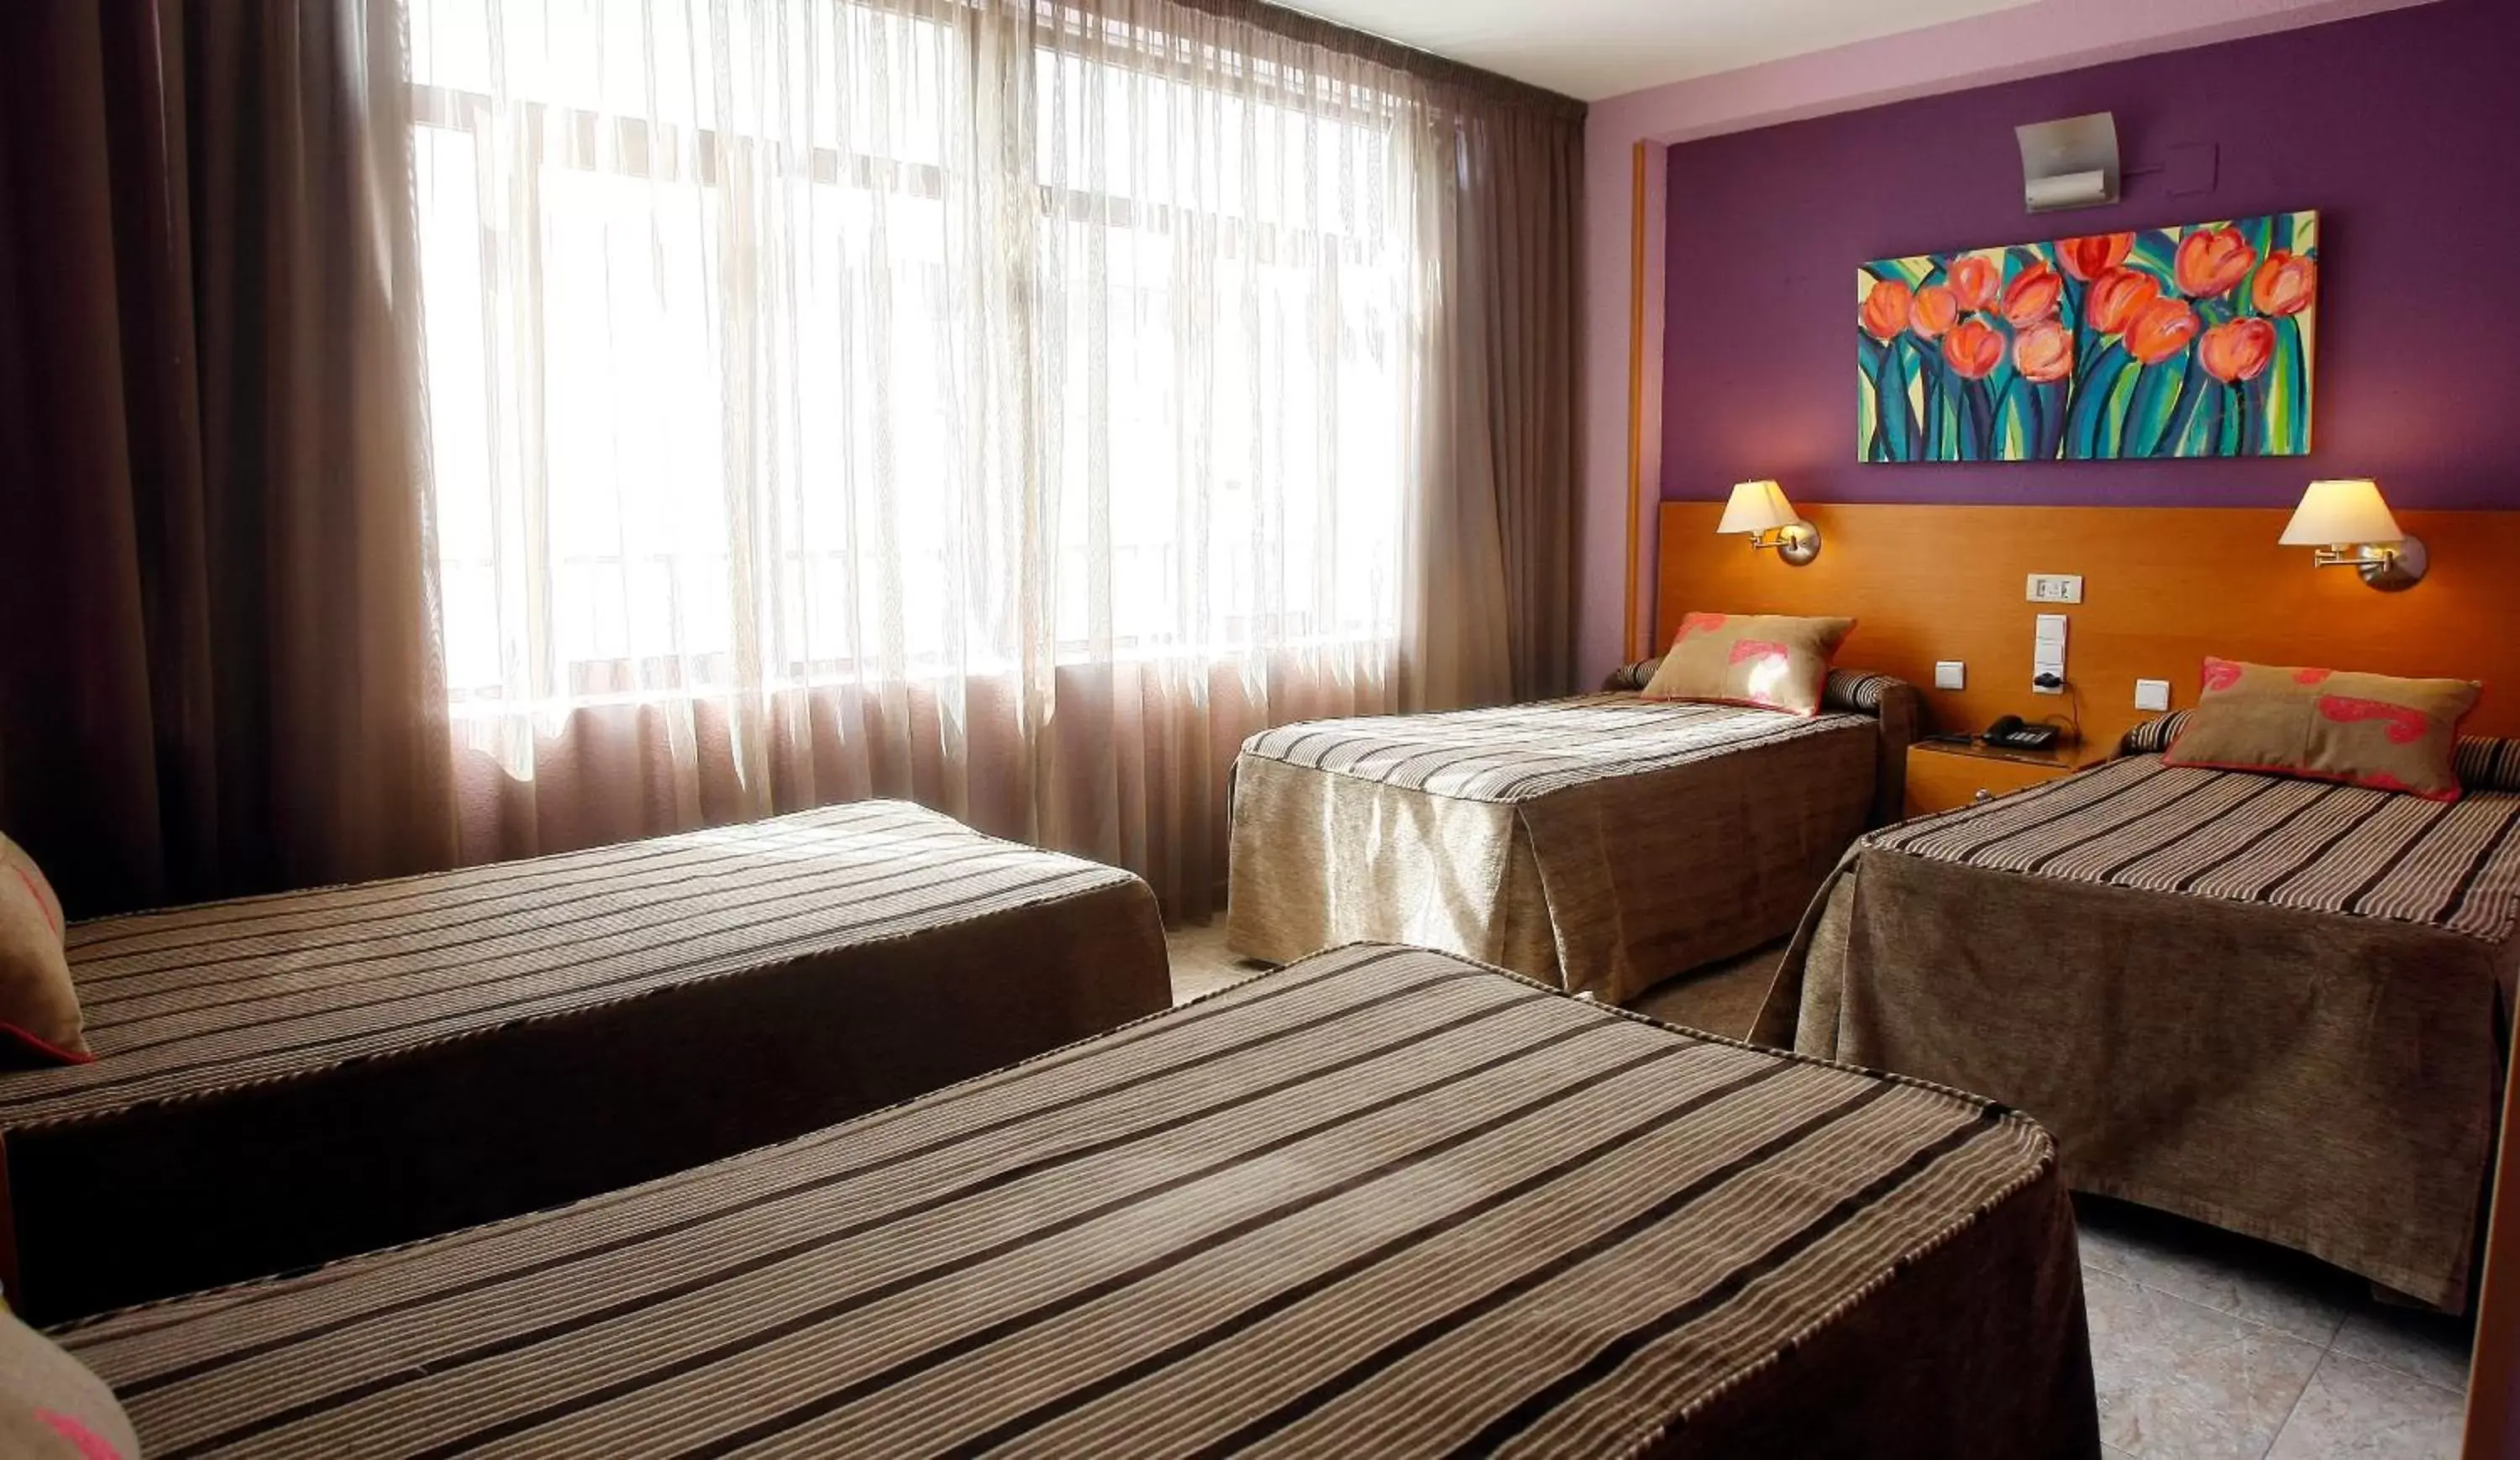 Bed, Room Photo in Hotel El Águila